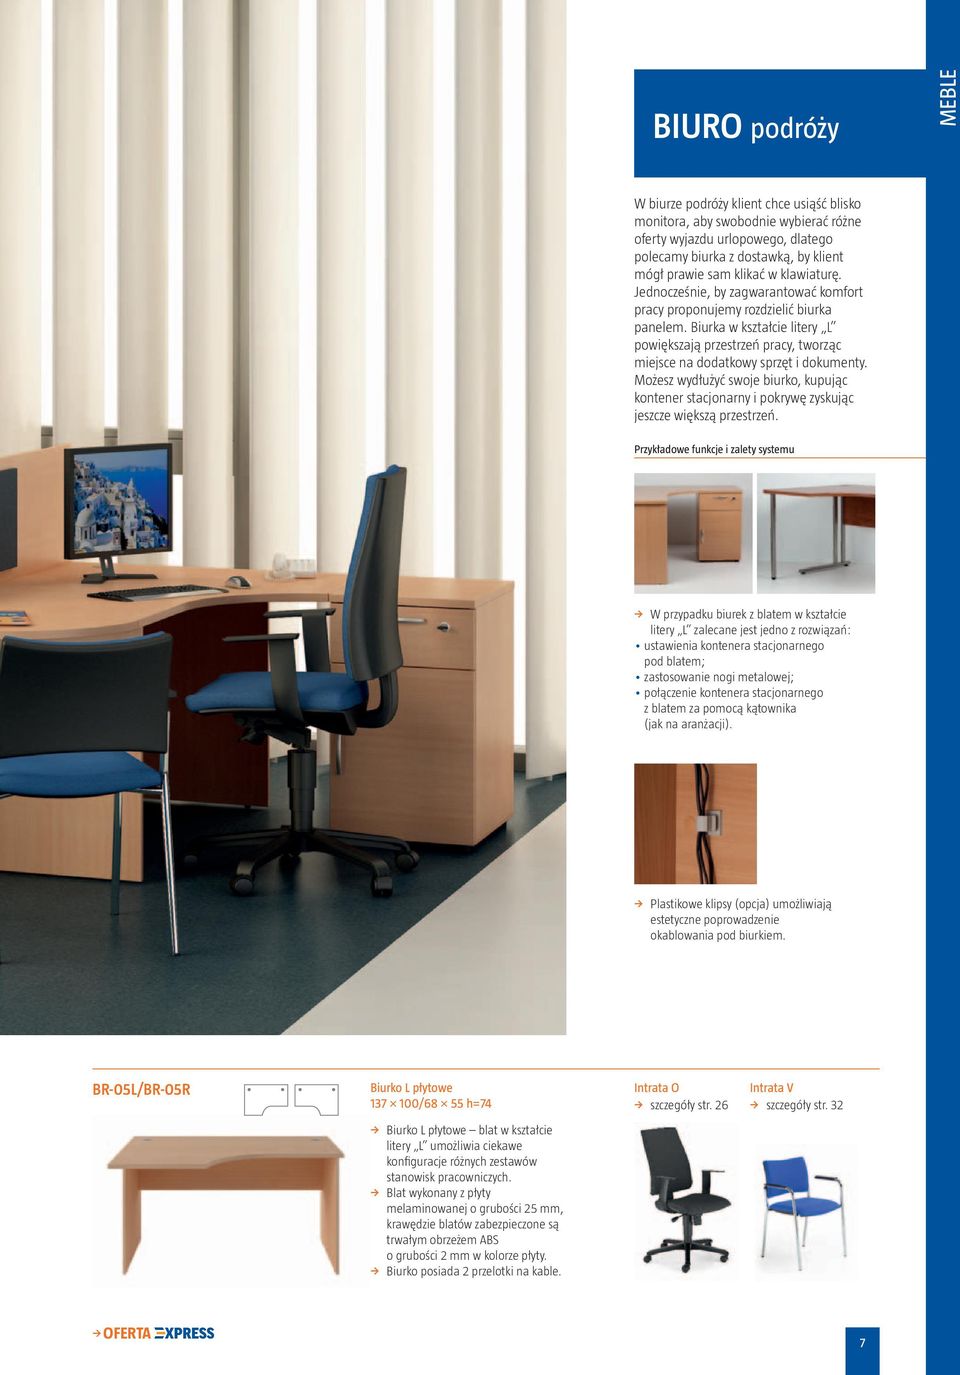 Biurka w kształcie litery L powiększają przestrzeń pracy, tworząc miejsce na dodatkowy sprzęt i dokumenty.